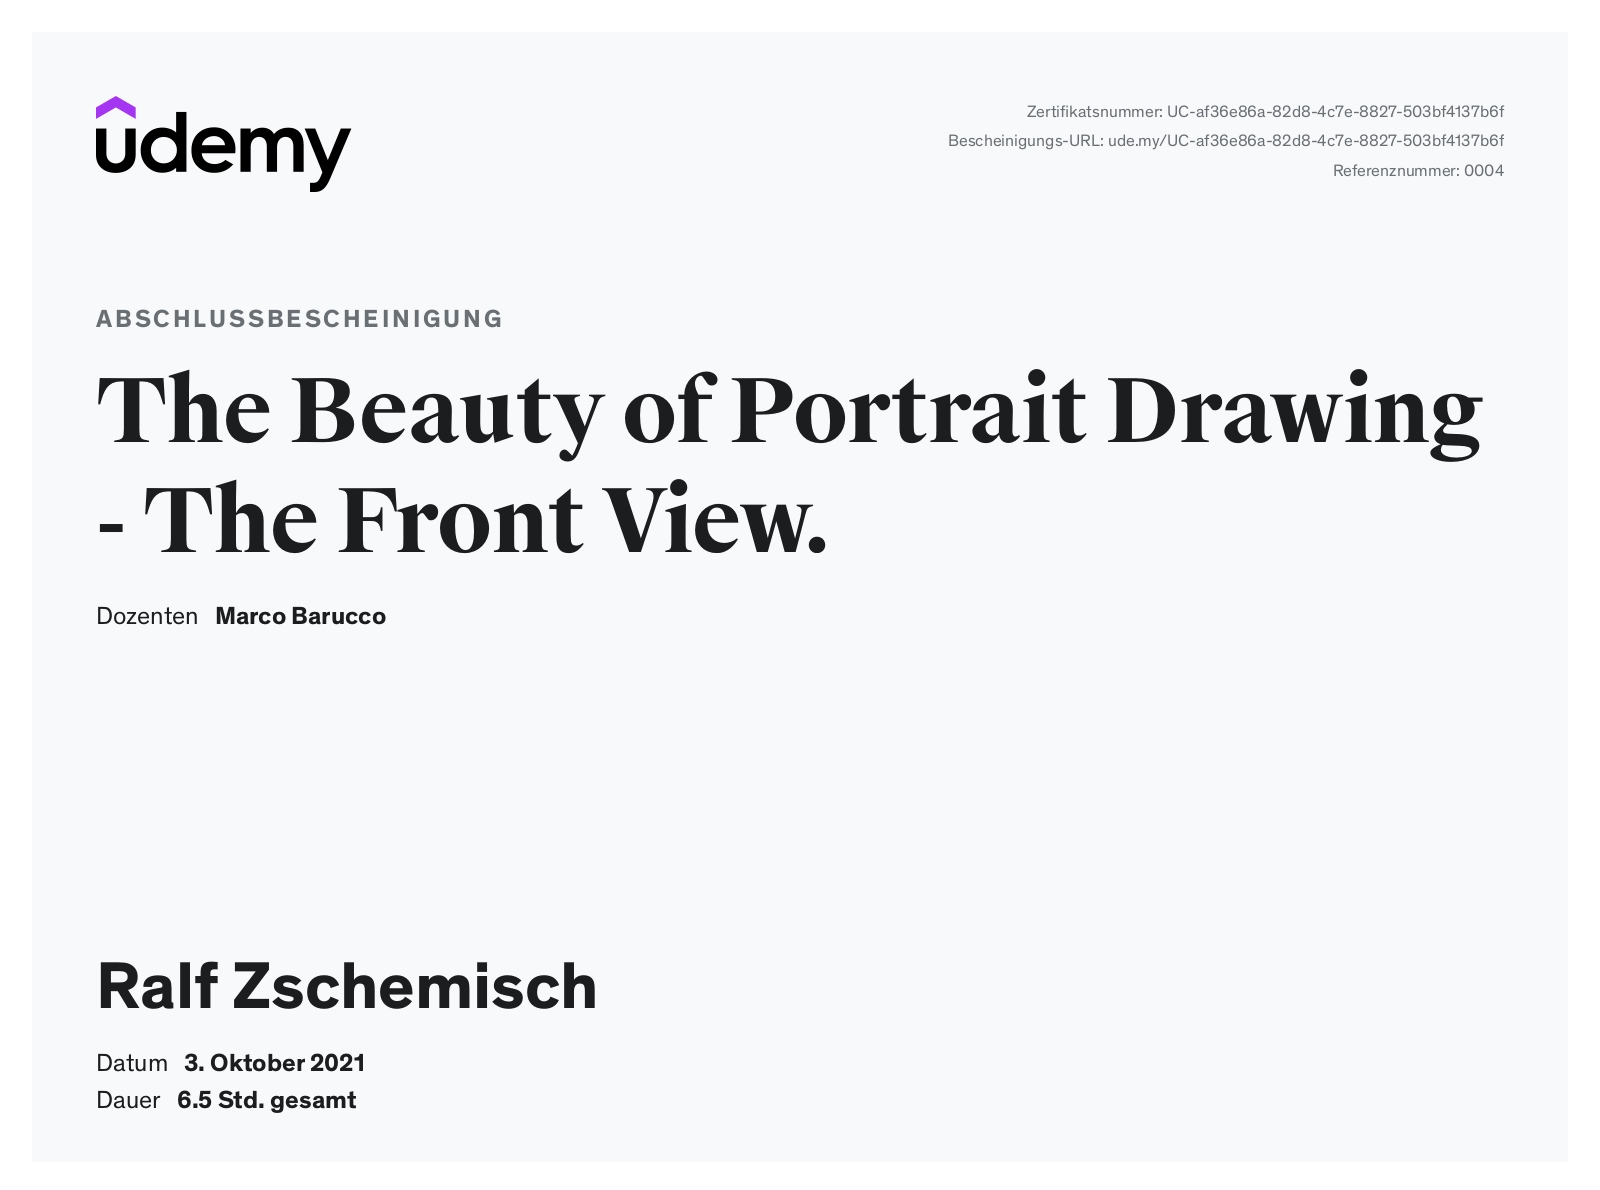 Meine Abschlussbescheinigung für den Kurs „The Beauty of Portrait Drawing – The Front View“